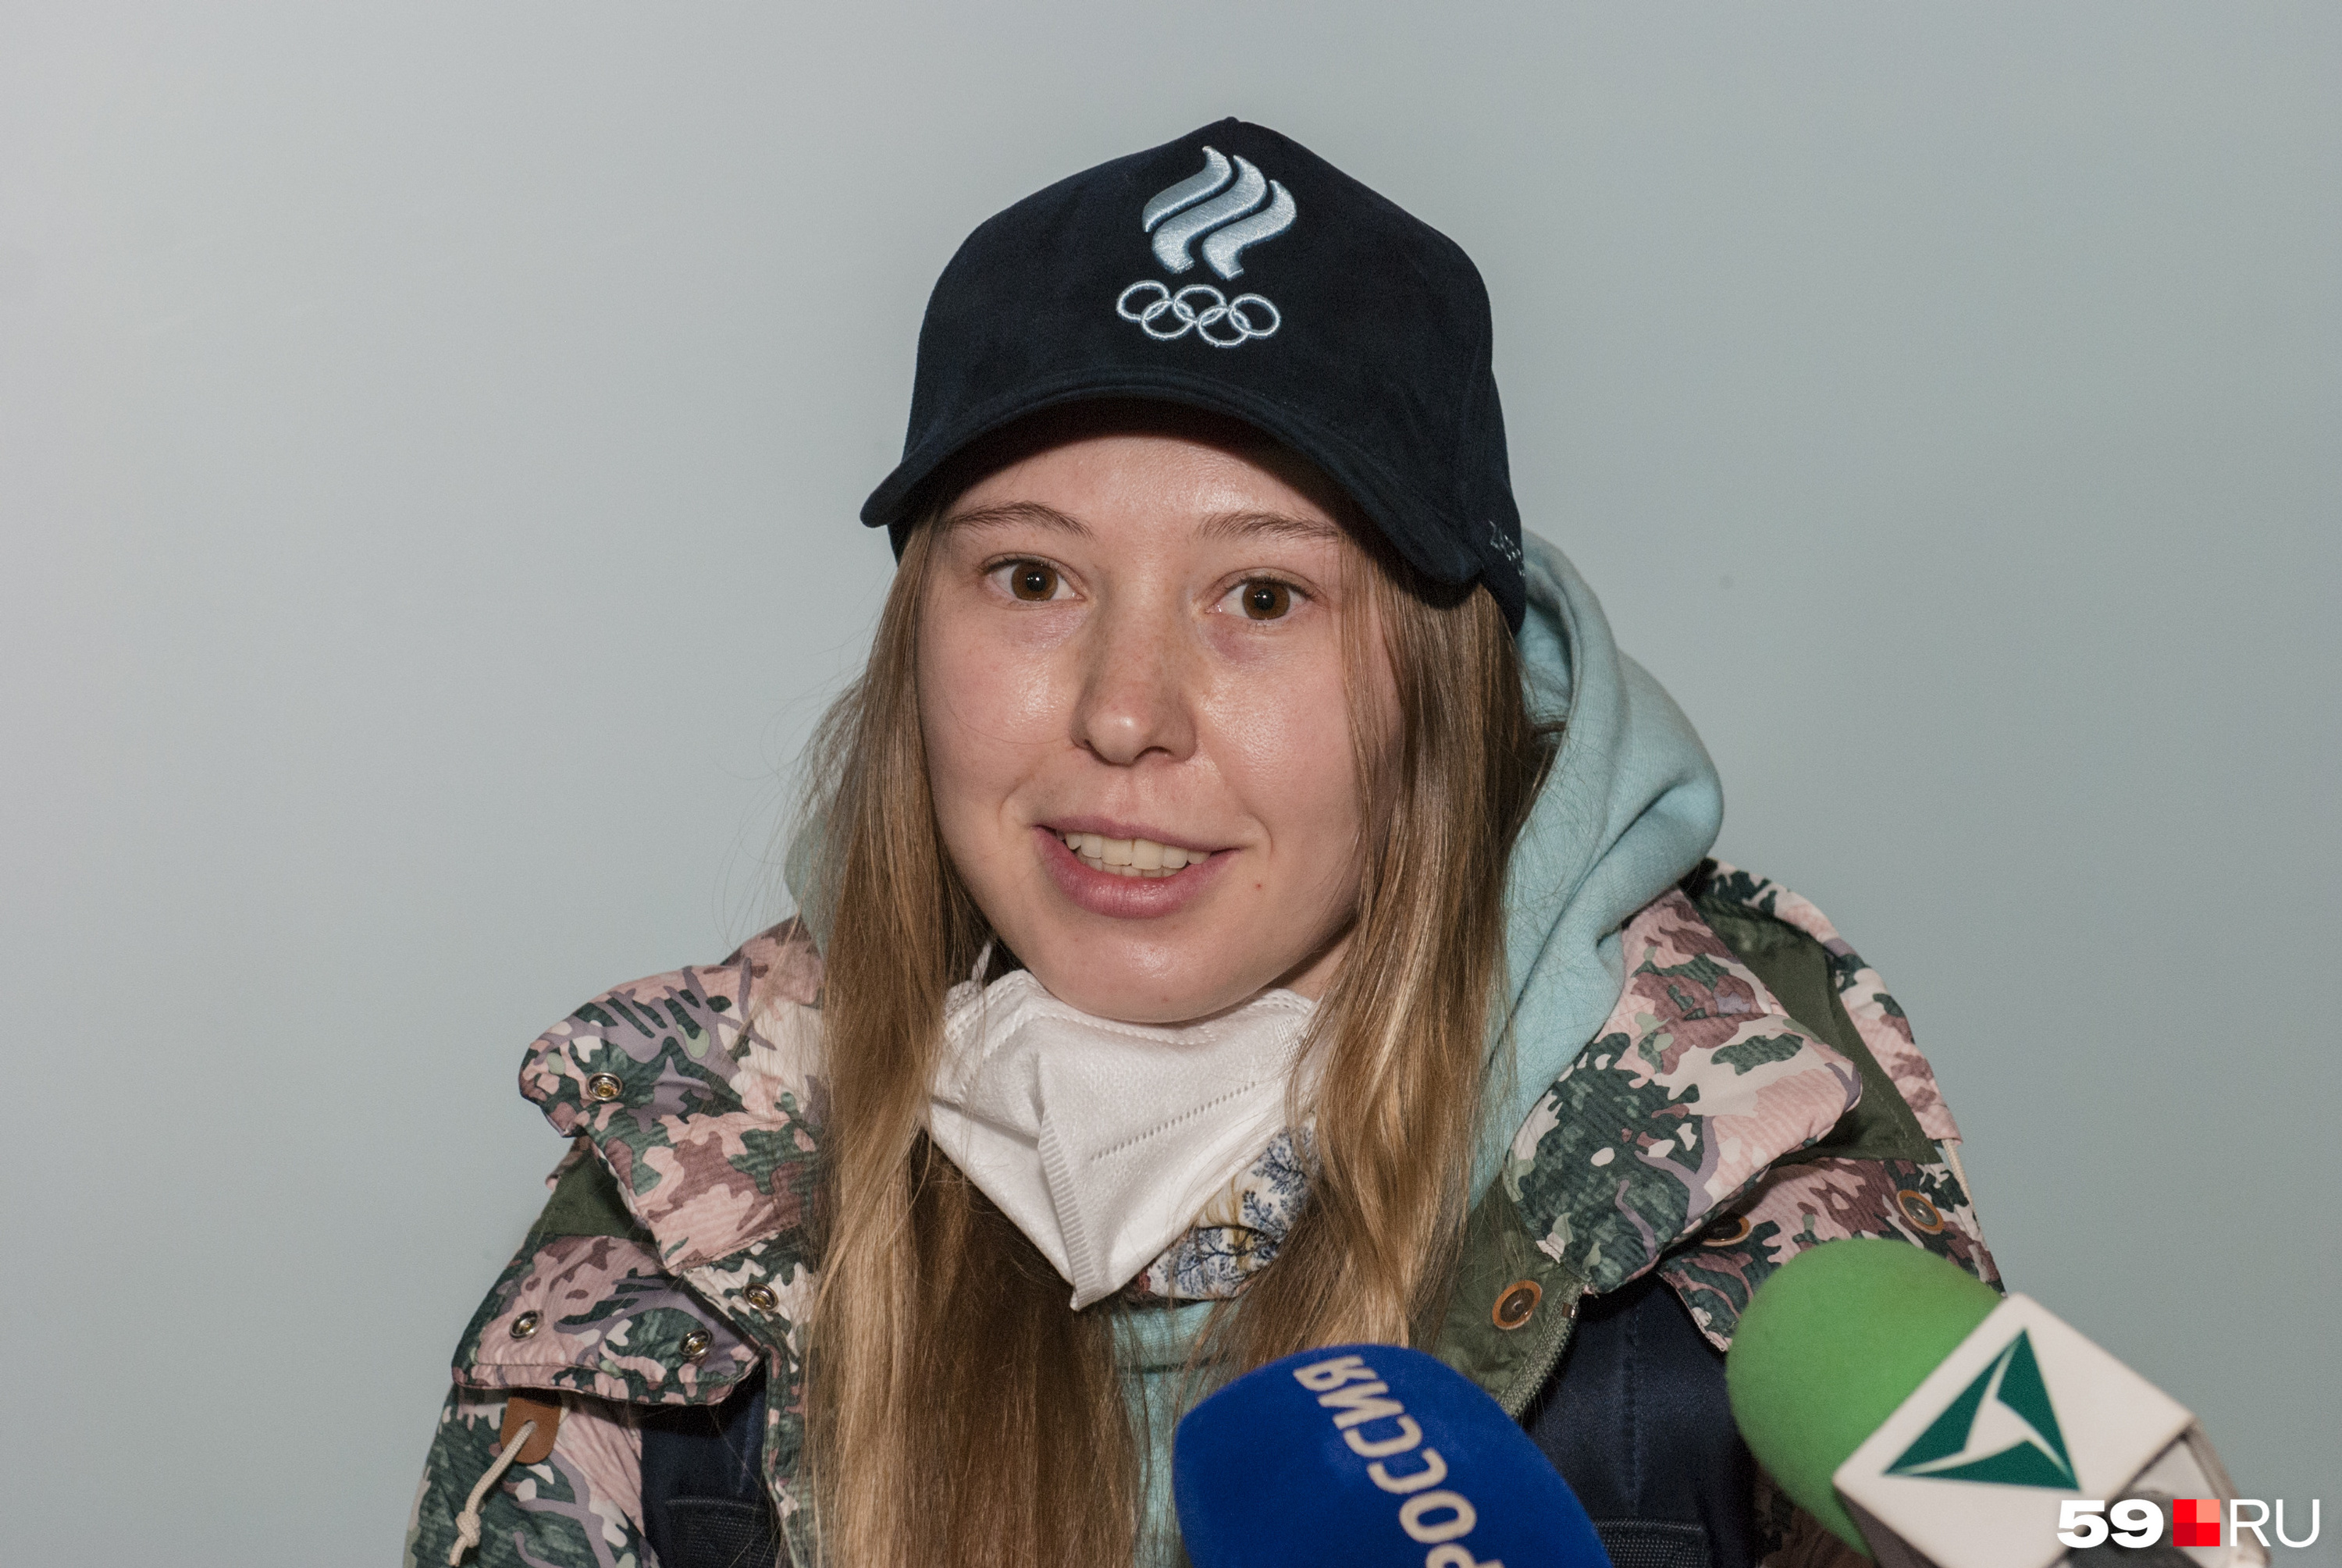 Анастасия Первушина отметила атмосферу, которая царит на Олимпийских играх